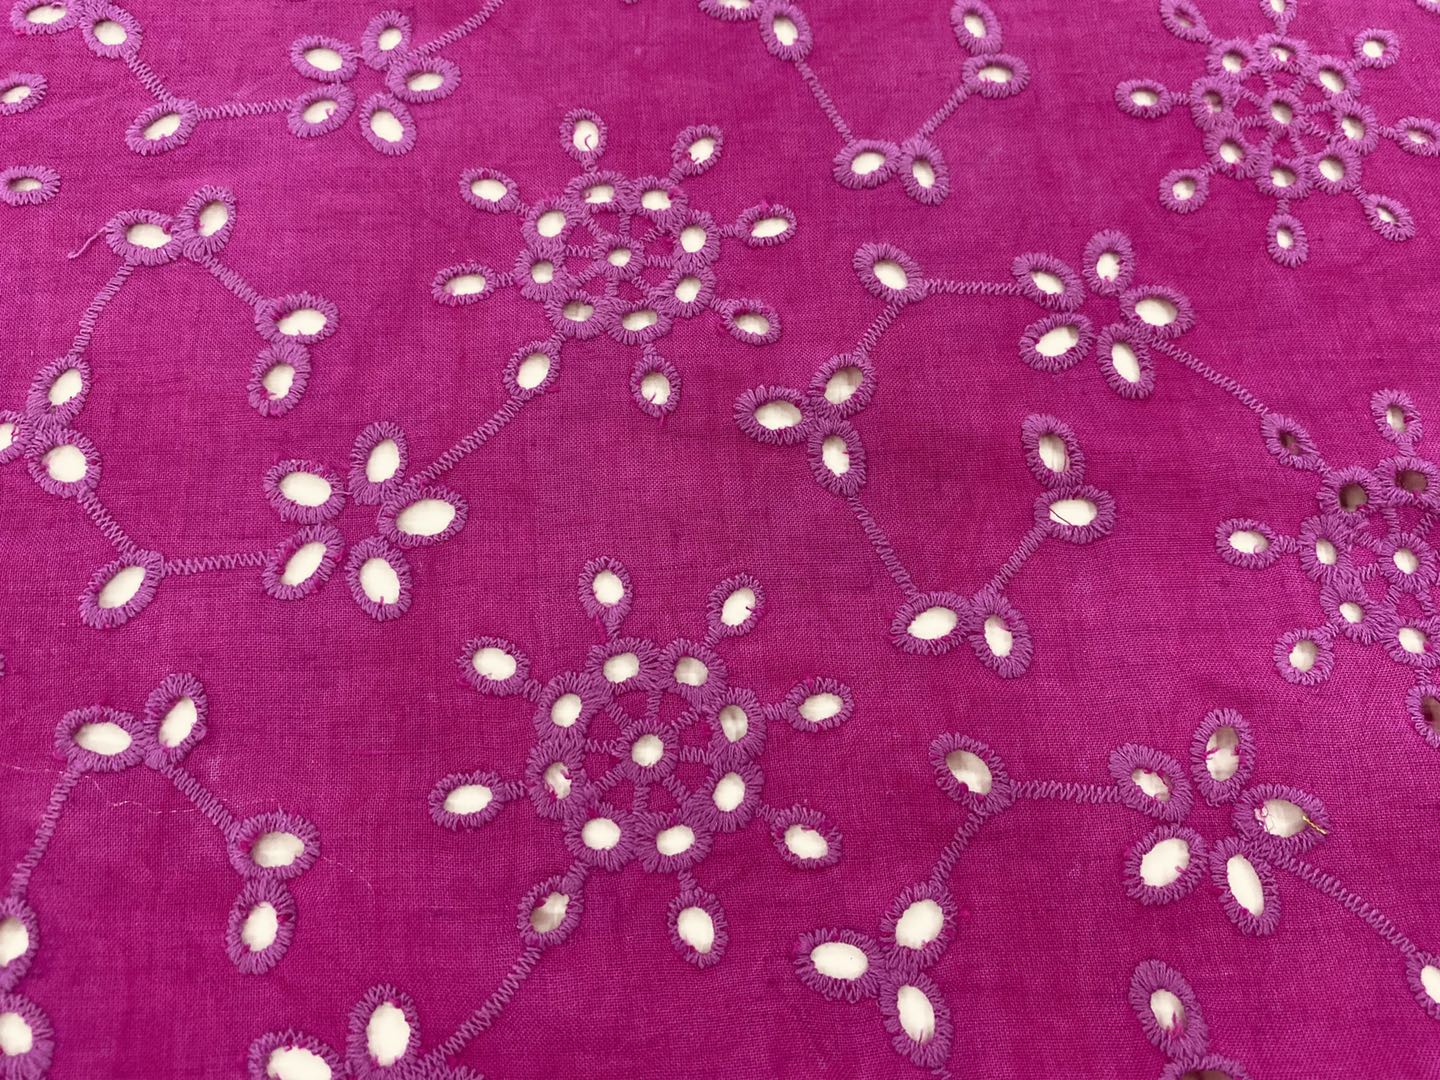 Fuschia Cotton Eyelet Embroidery Fabric